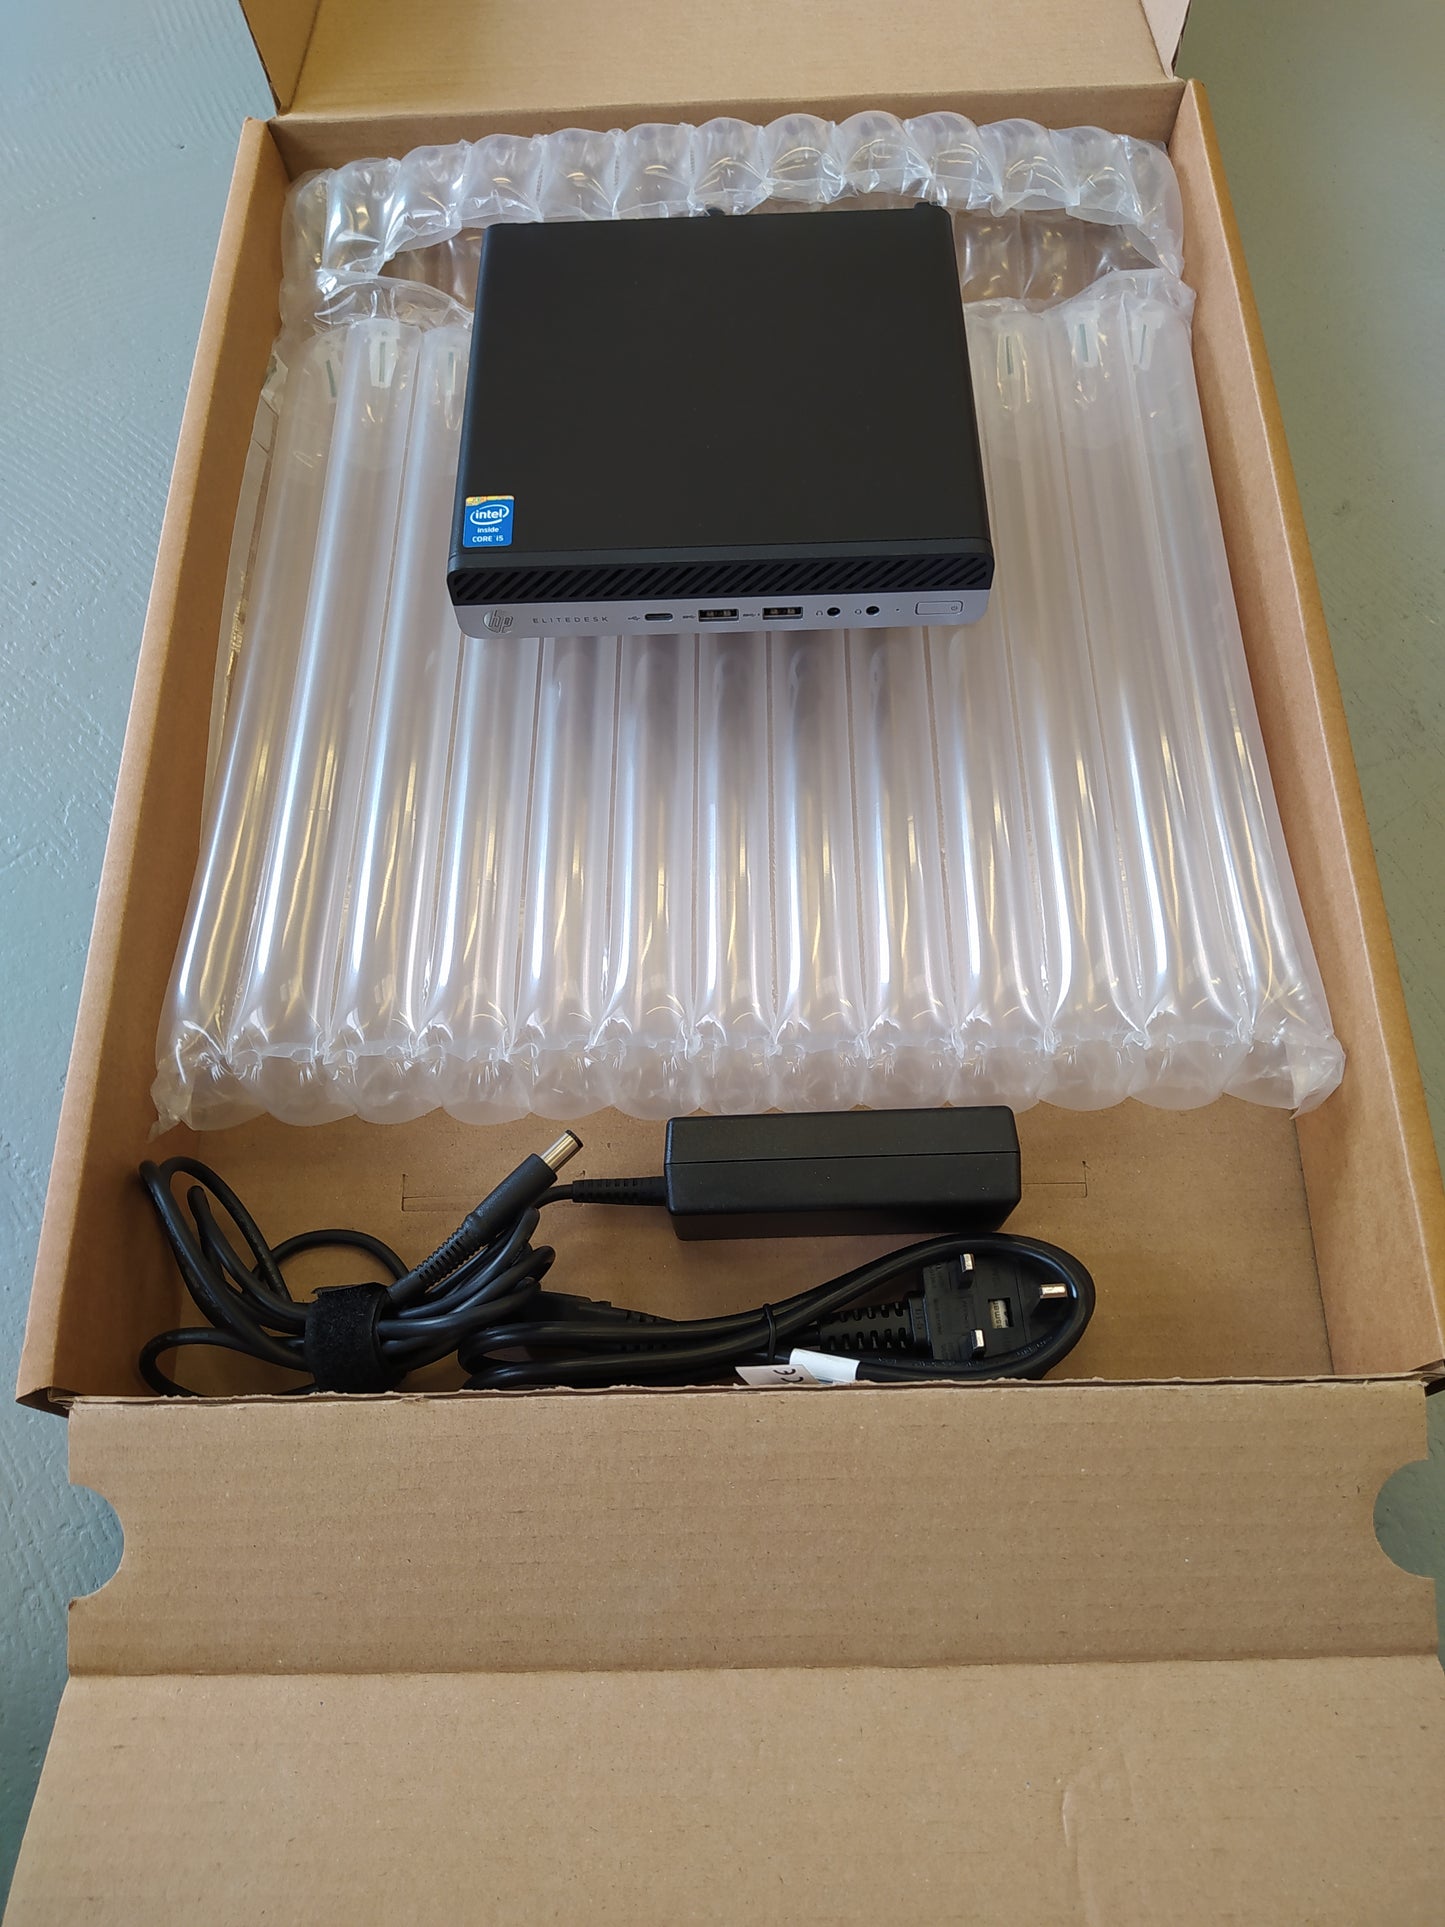 HP Elitedesk 800 G4 Mini - intel i5-8500T - 8GB - 256GB - Win 10 Pro